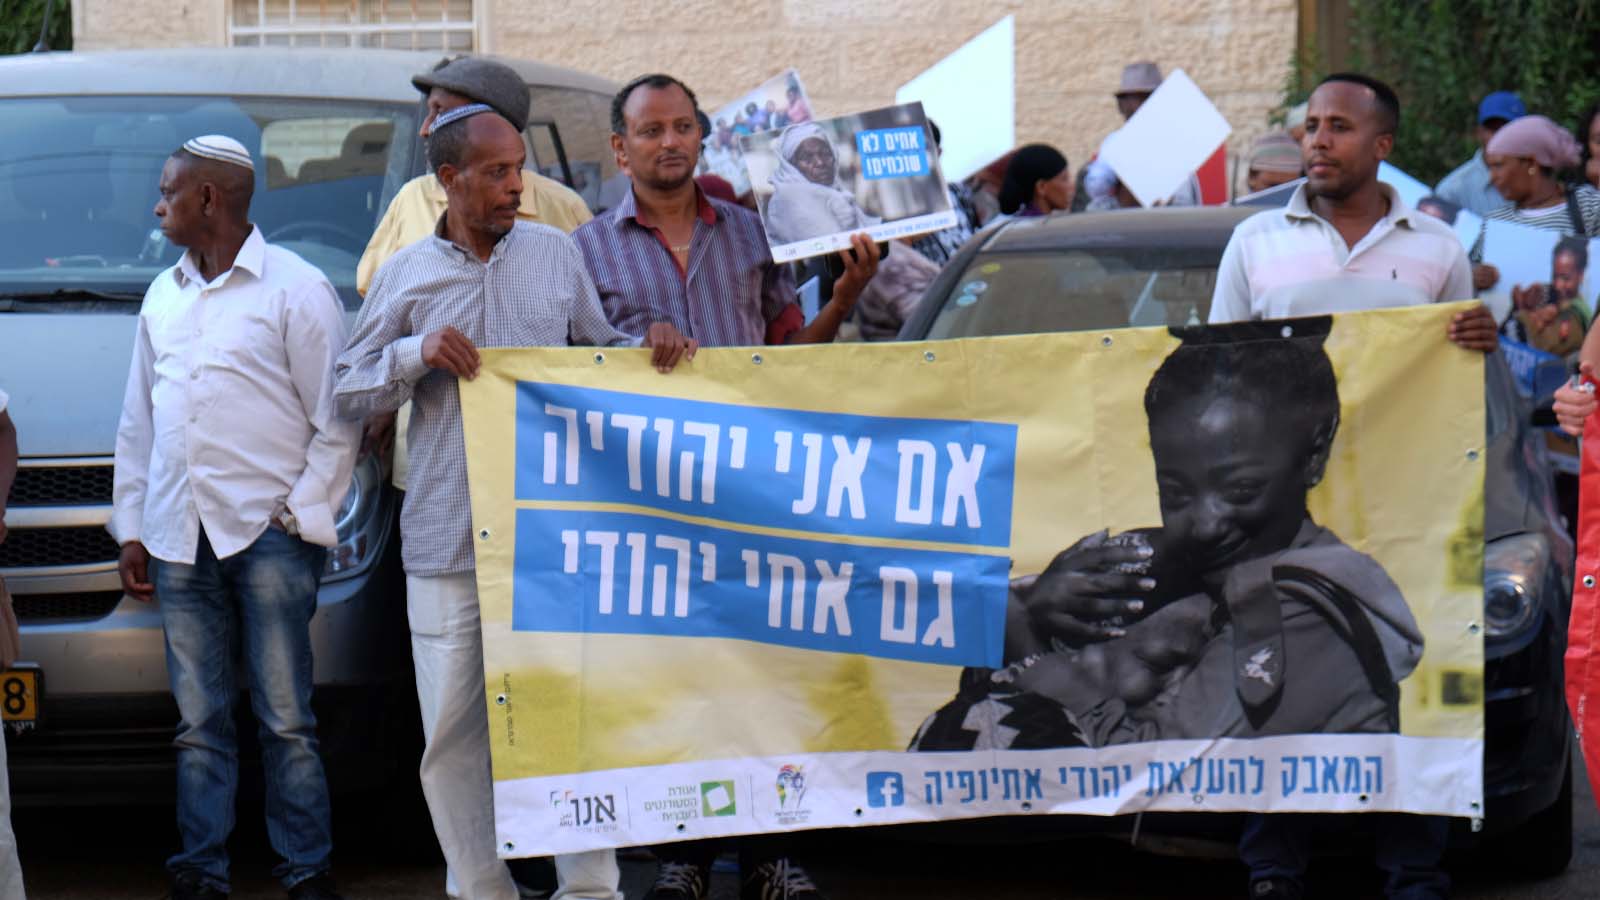 הפגנת המטה להעלאת יהודי אתיופיה בהפגנה מול ביתו של שר הפנים דרעי. 12 ביוני (צילום: דוד טברסקי)